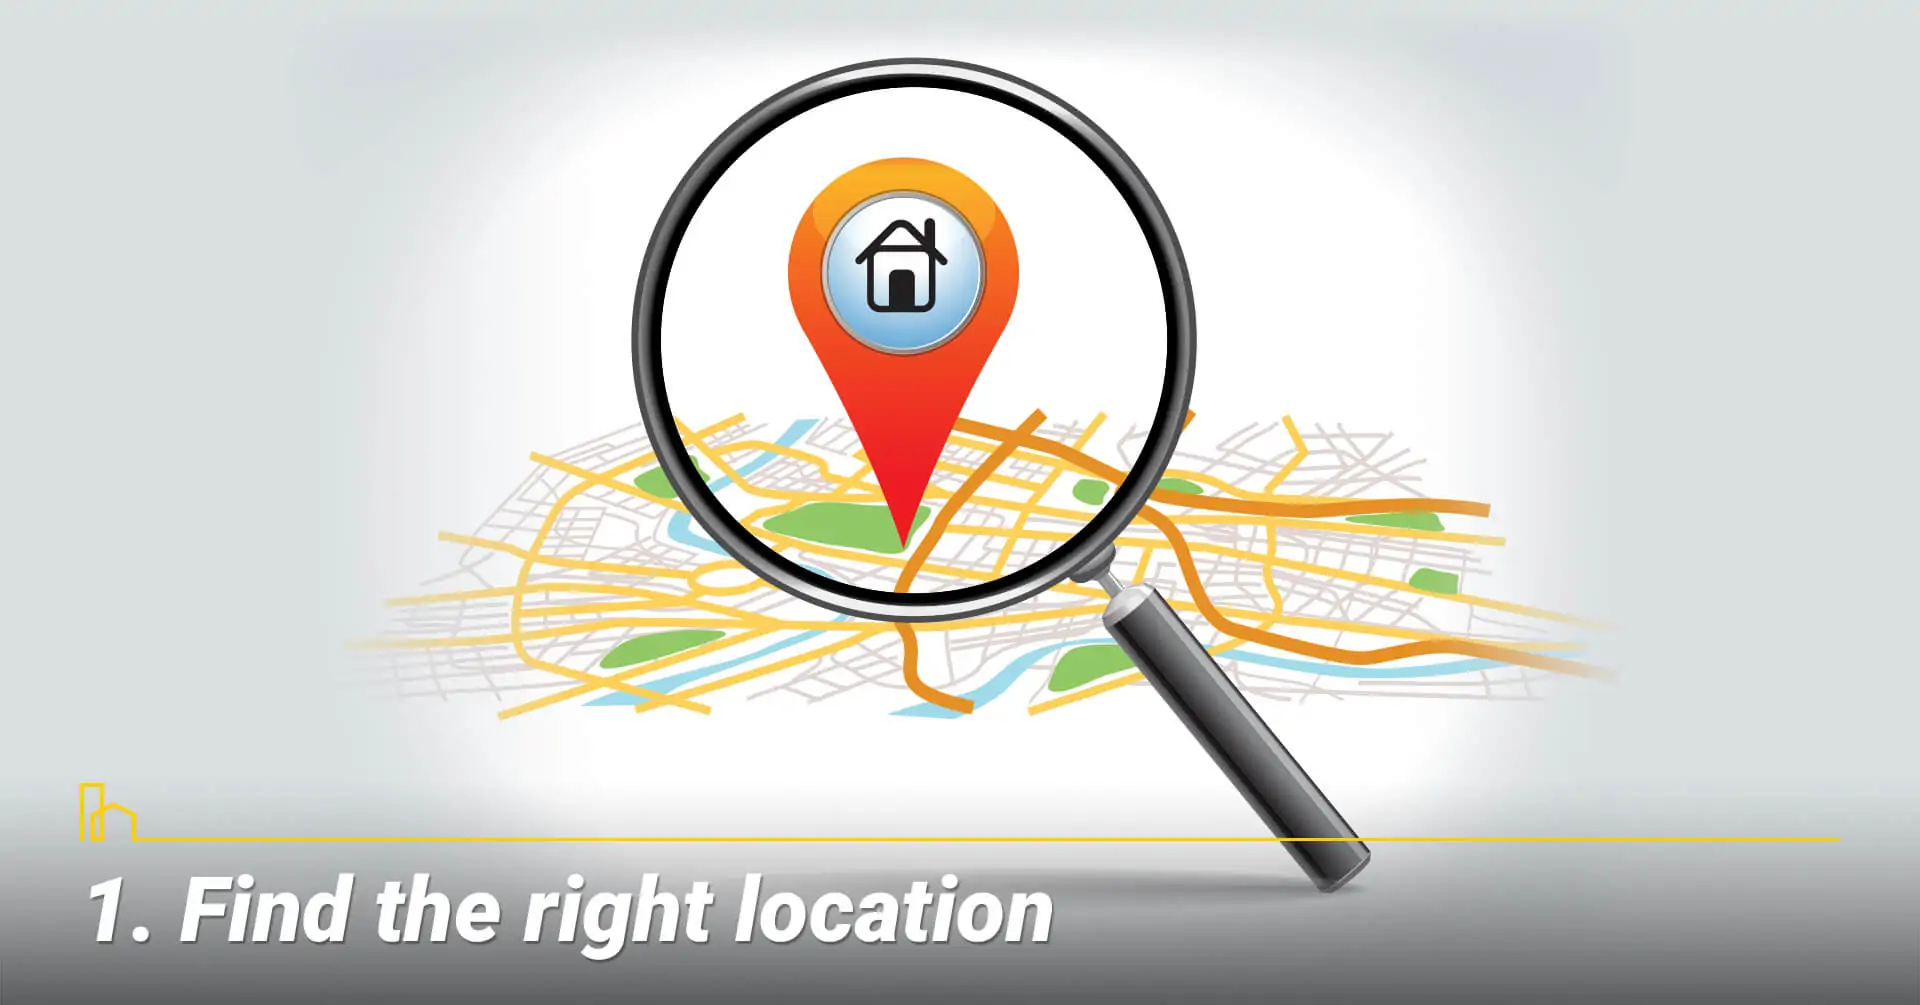 Find the right location, location location location